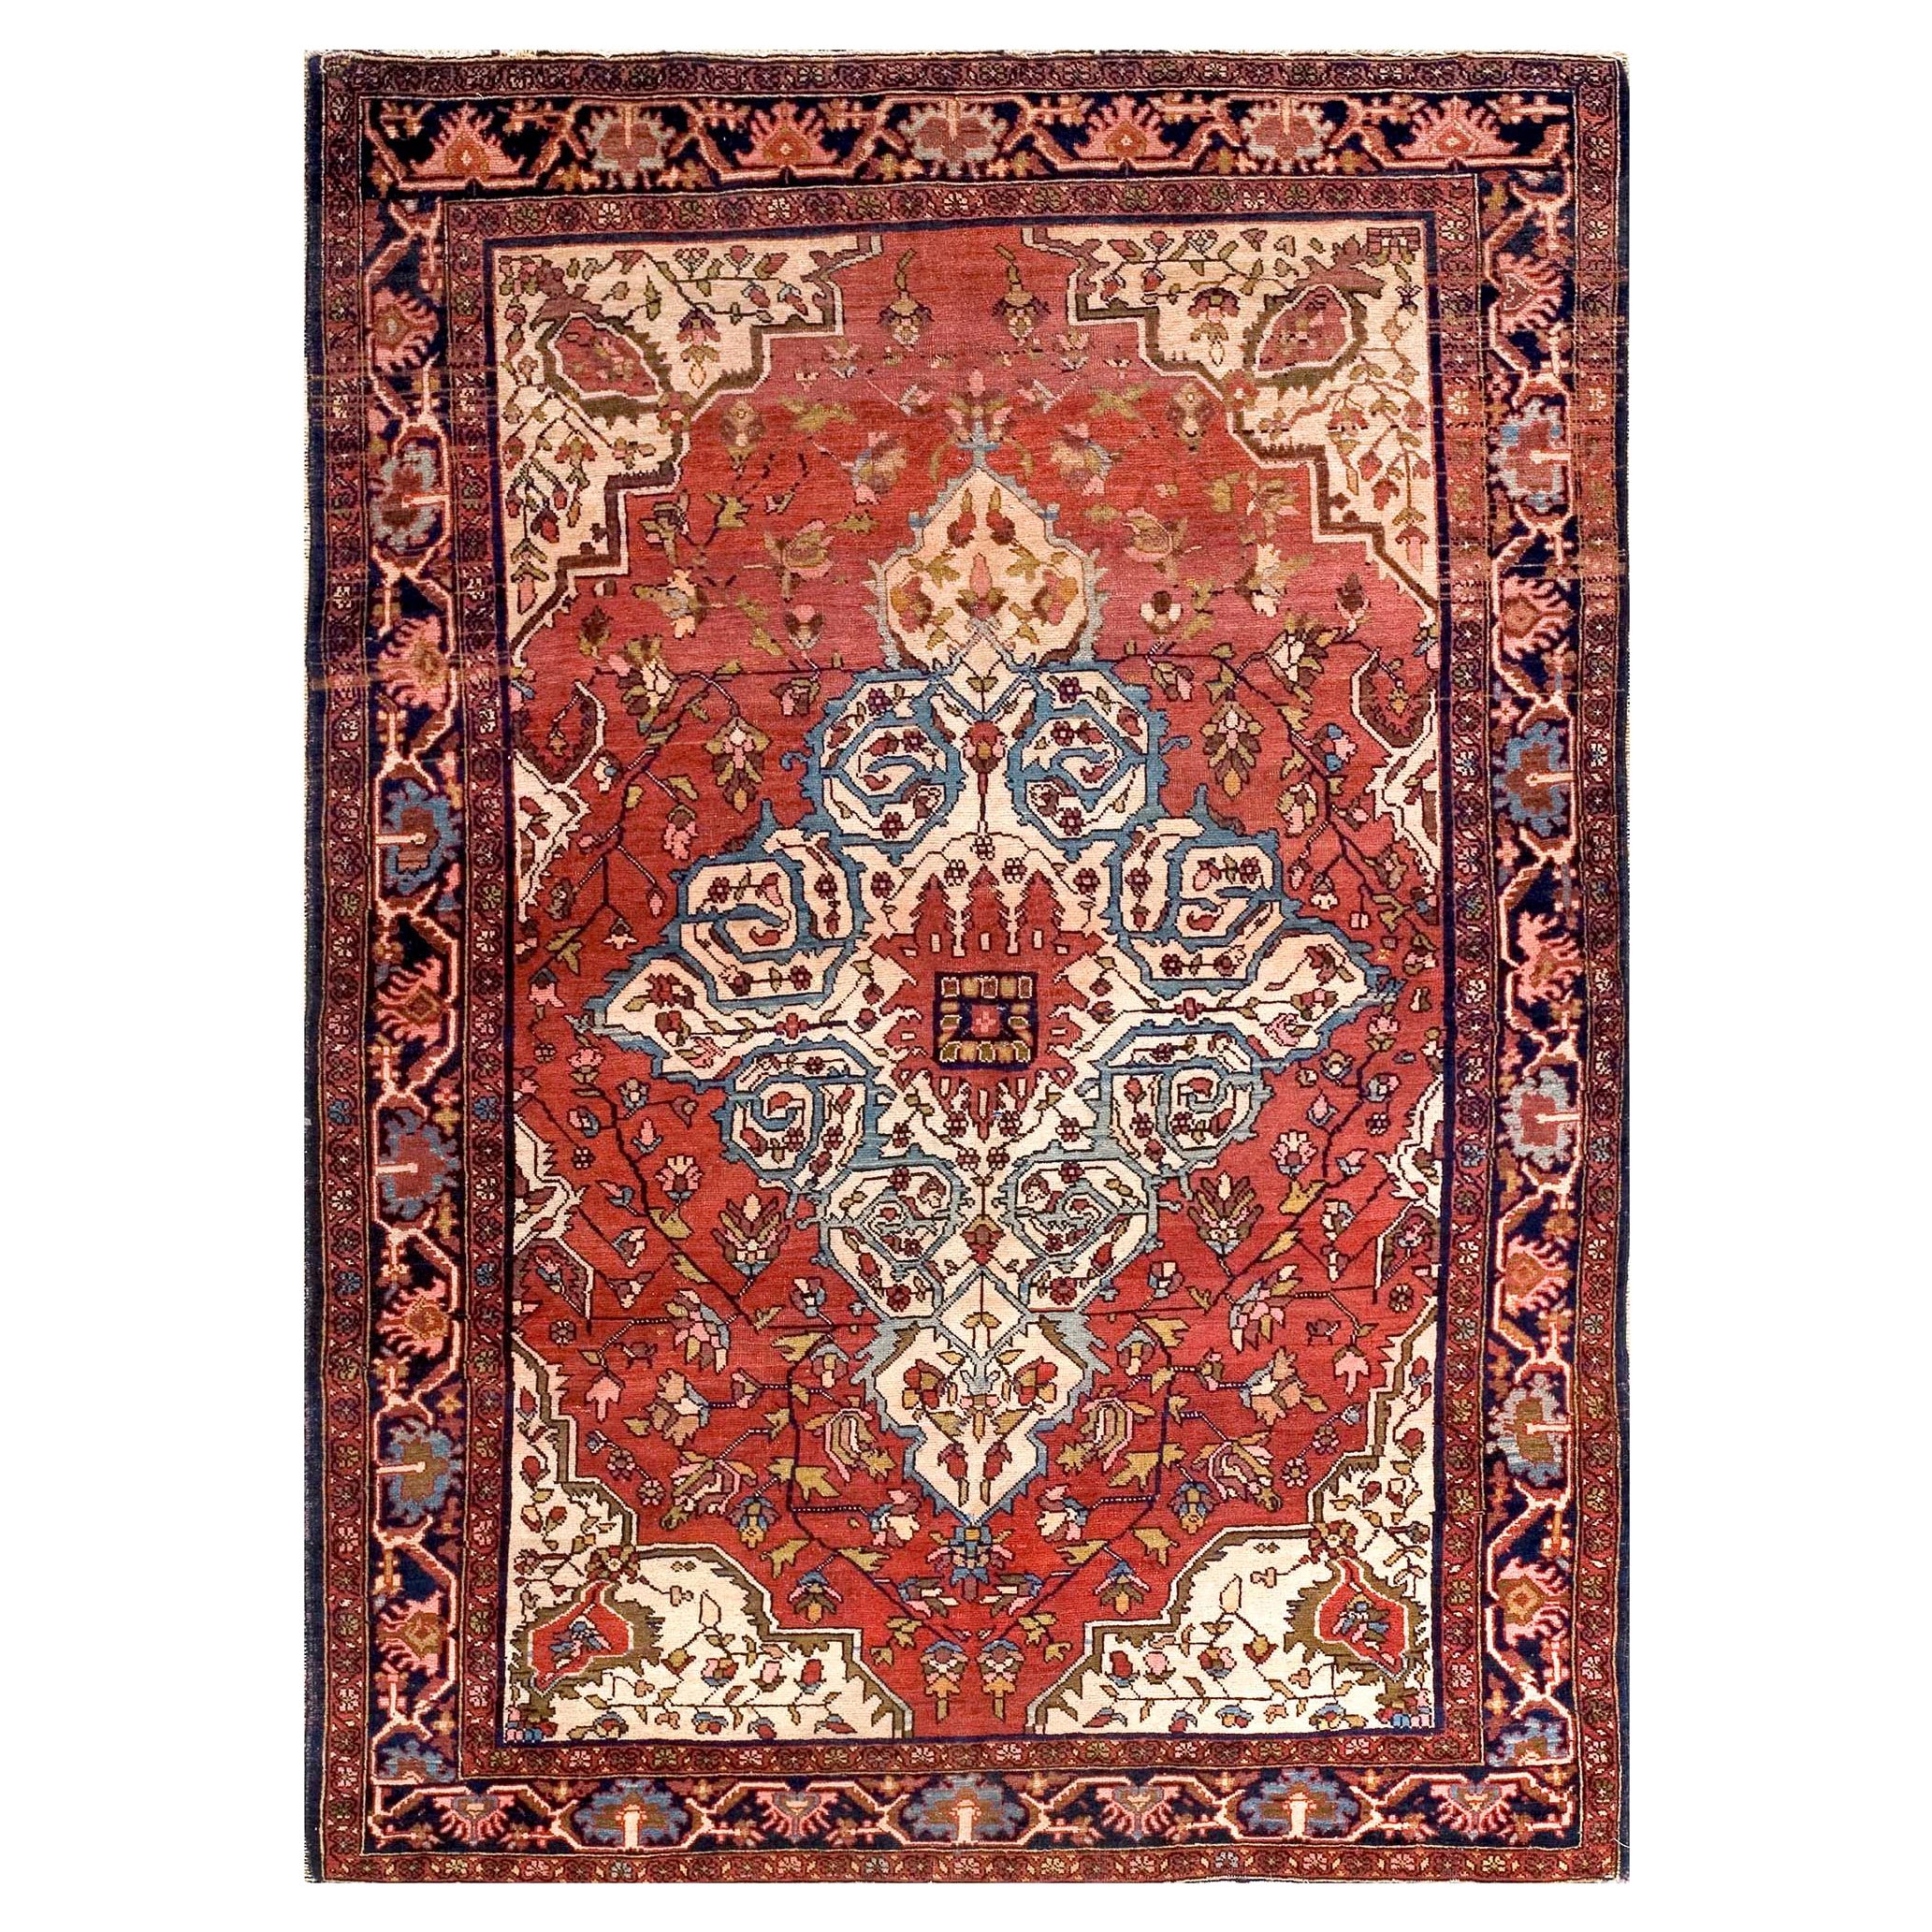 1920s Persian Sarouk Farahan Carpet ( 4'7" x 6'5" - 140 x 195 cm ) 